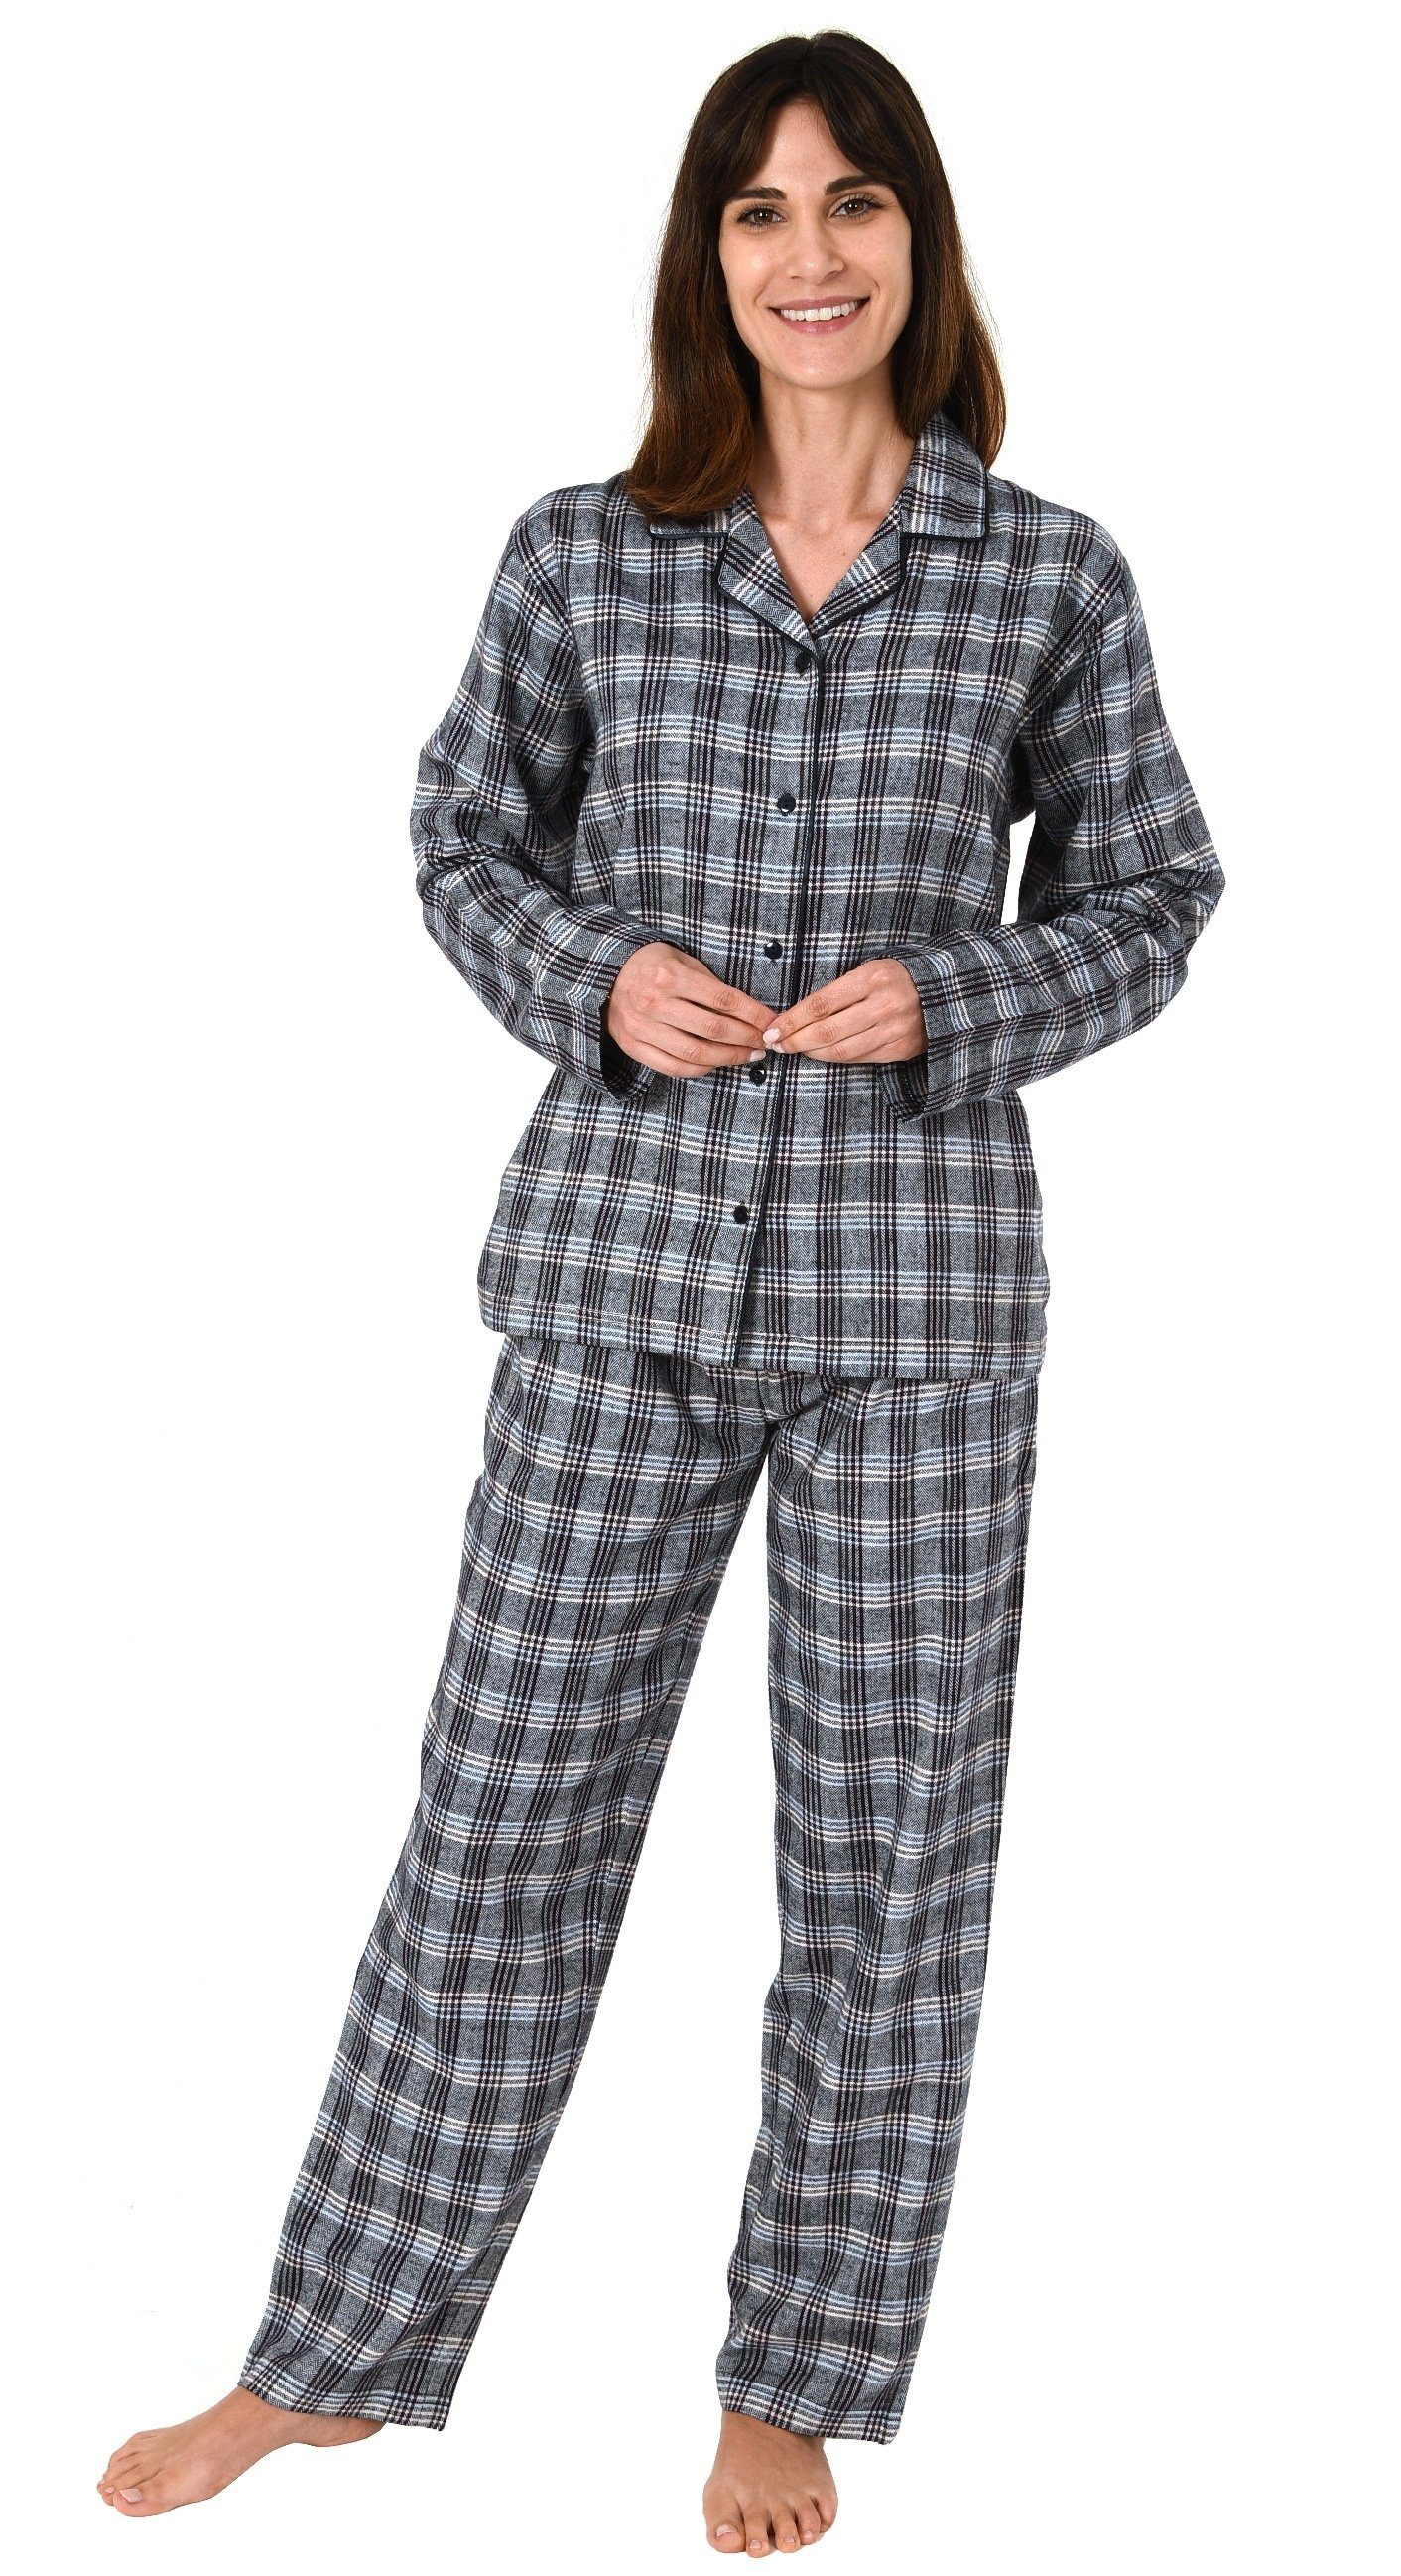  Normann Flanell in Schlafanzug - Pyjama langarm Übergrößen kariert auch Damen